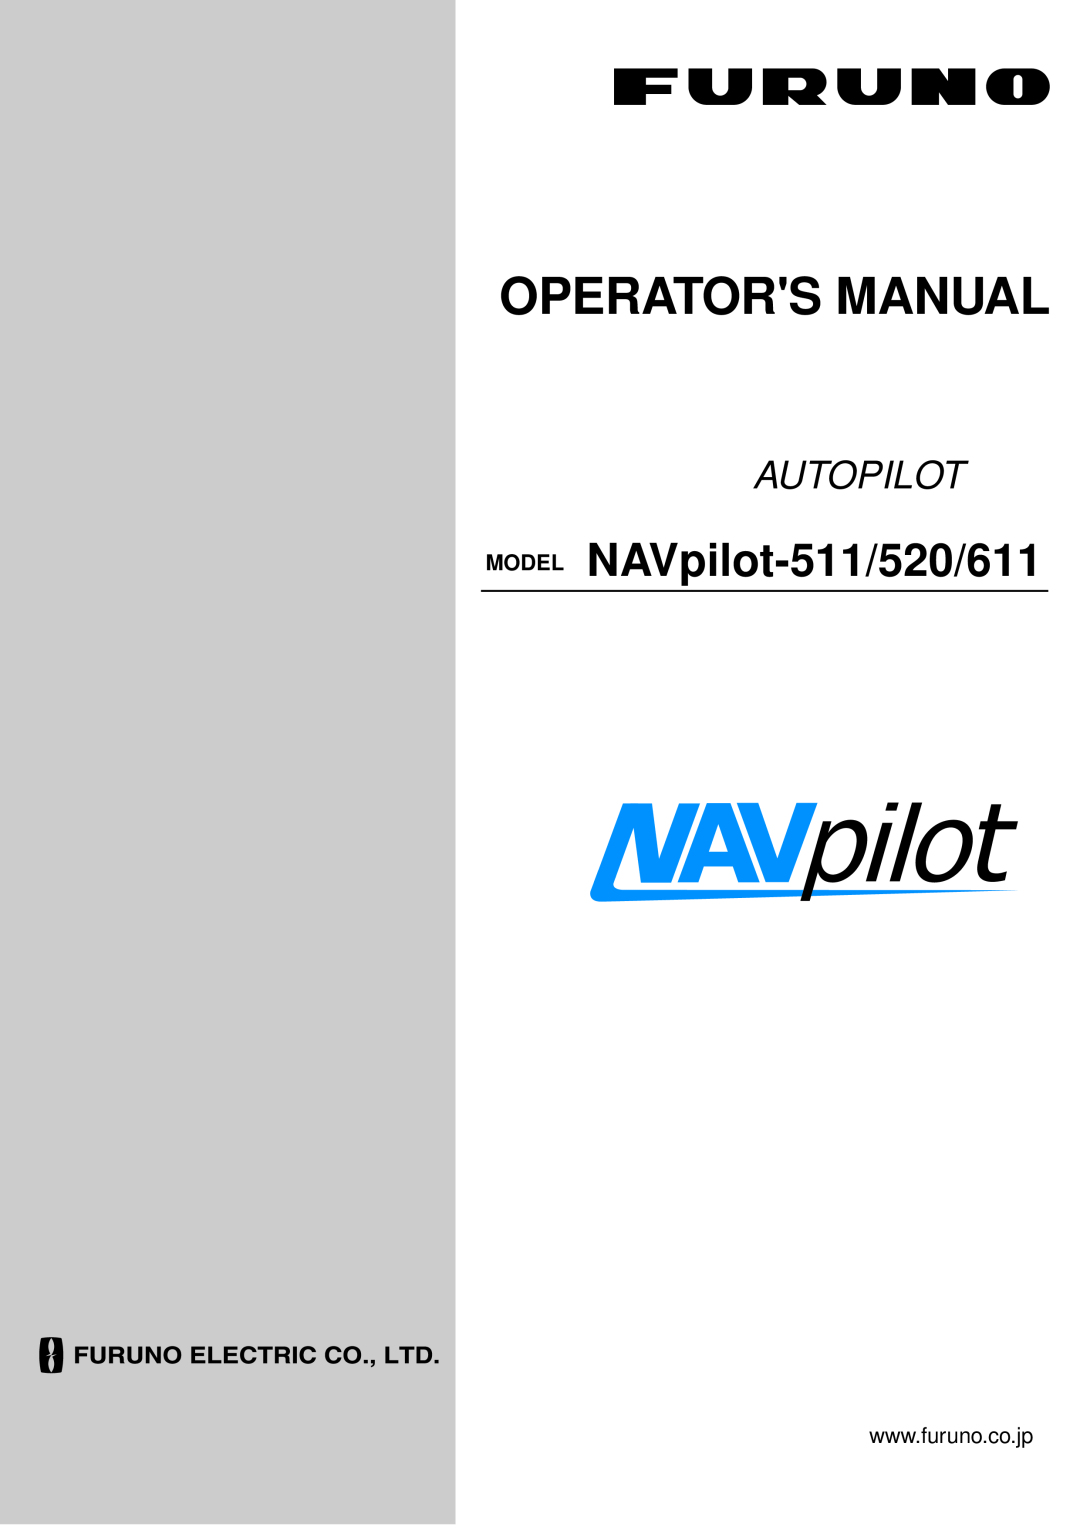 Furuno manual Operators Manual, MODEL NAVpilot-511/520/611, Autopilot 